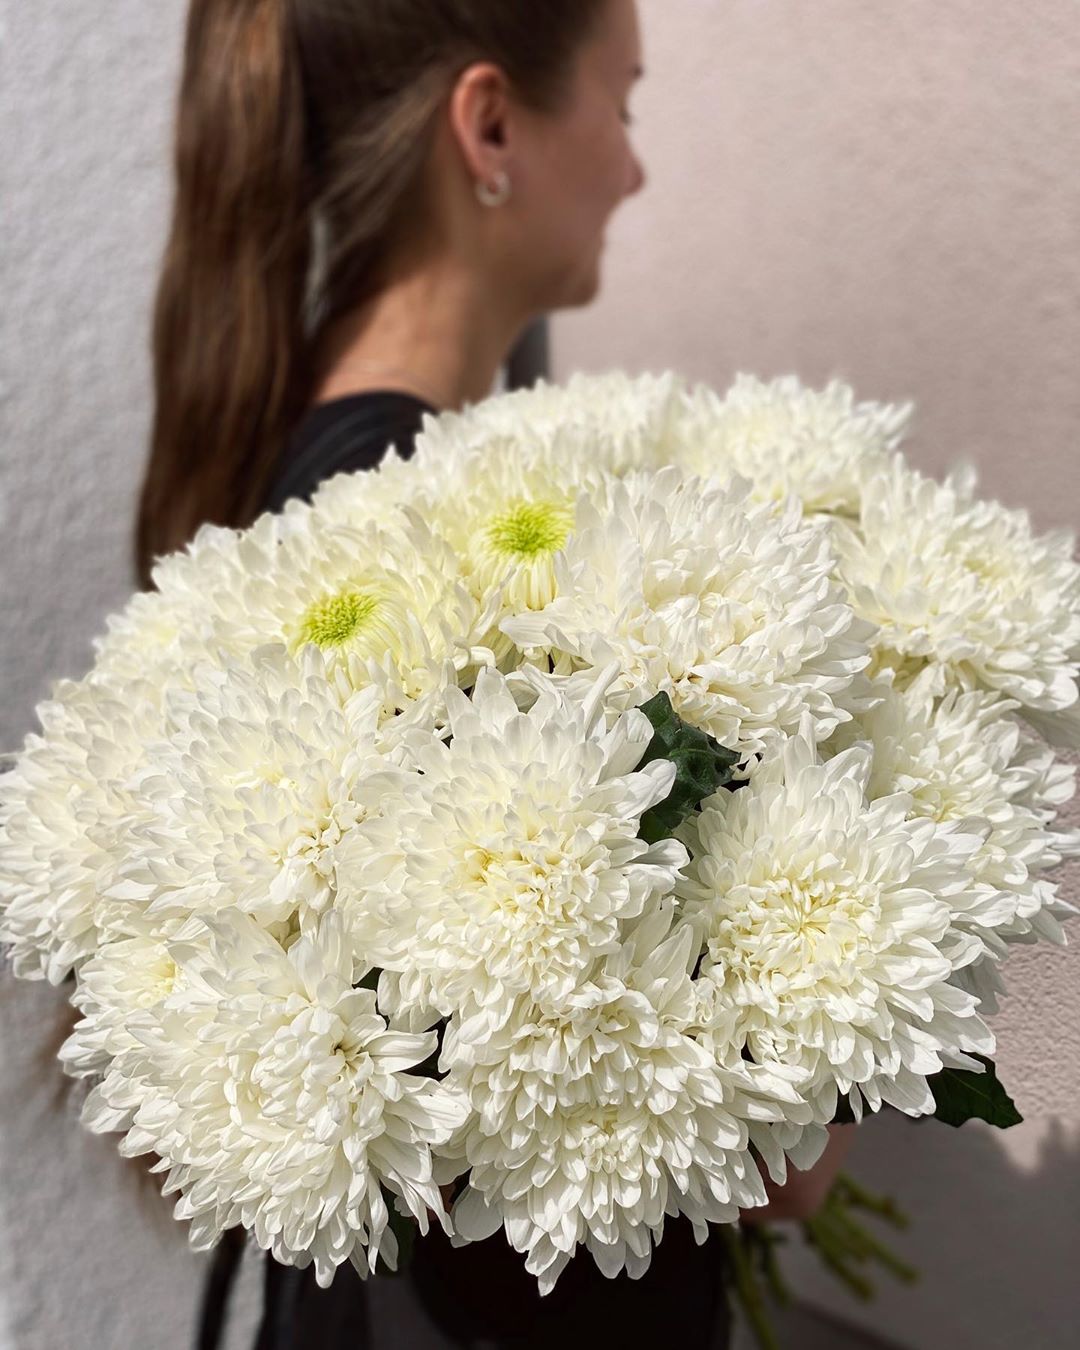 Гипермаркет цветов - Невинные, чистые, по-домашнему уютные белые хризантемы, как воспоминание о детстве, проведенном в деревенском доме у бабушки. Букет отлично подойдет в подарок родителям, пожилым...